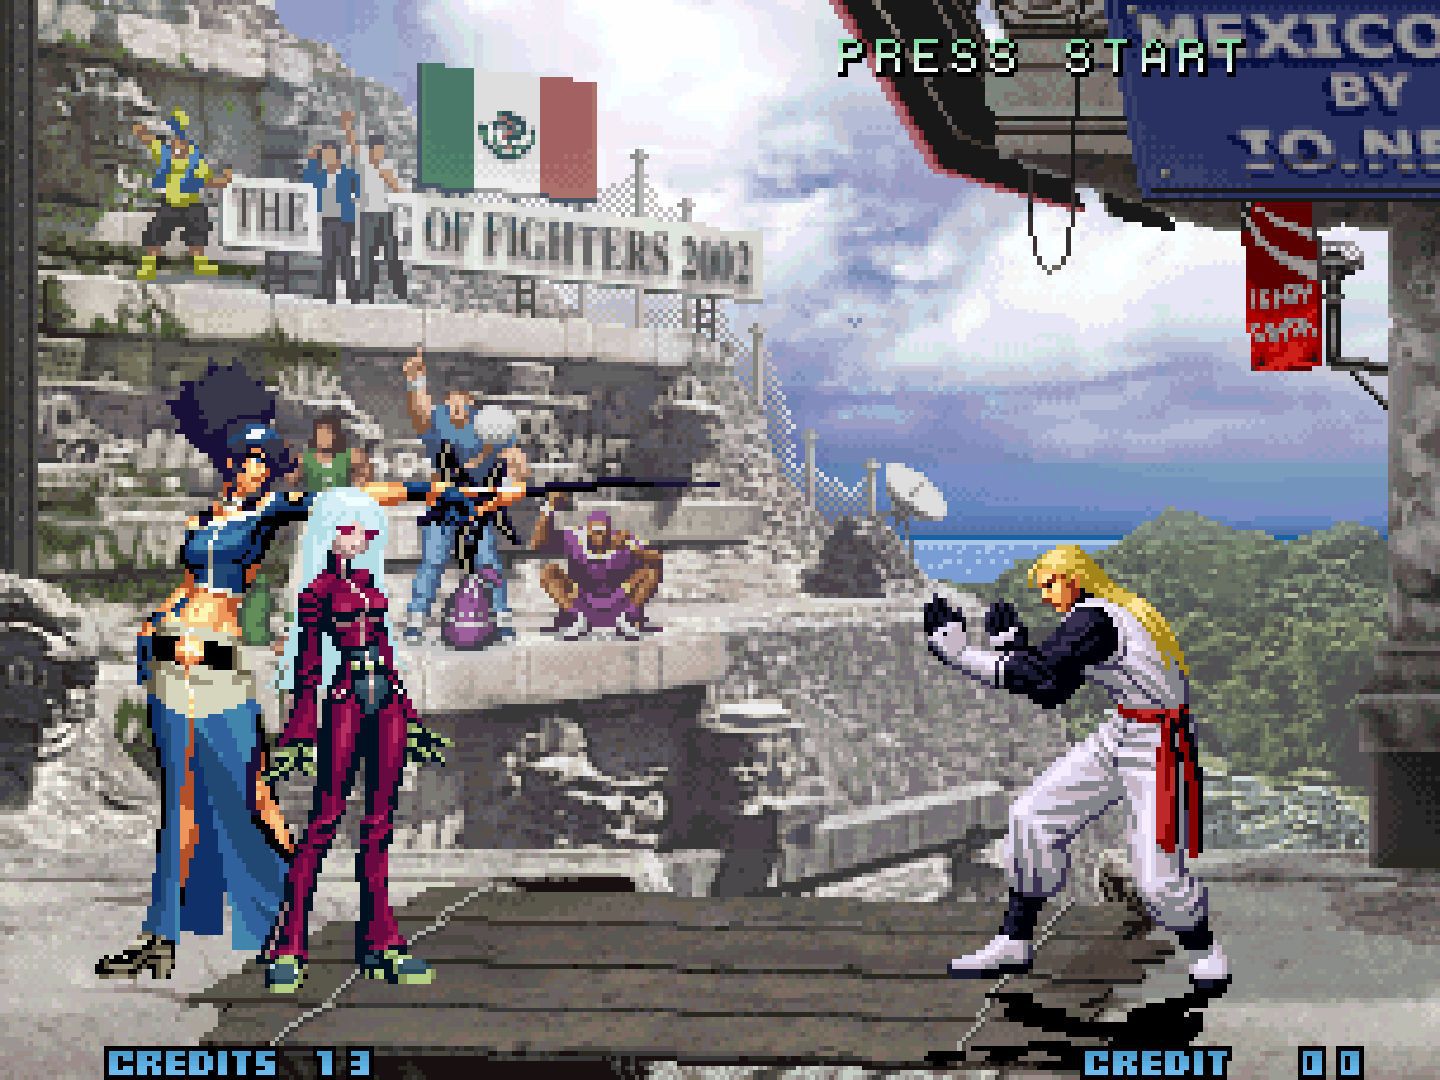 Corra que é grátis! The King of Fighters 2002 está disponível para